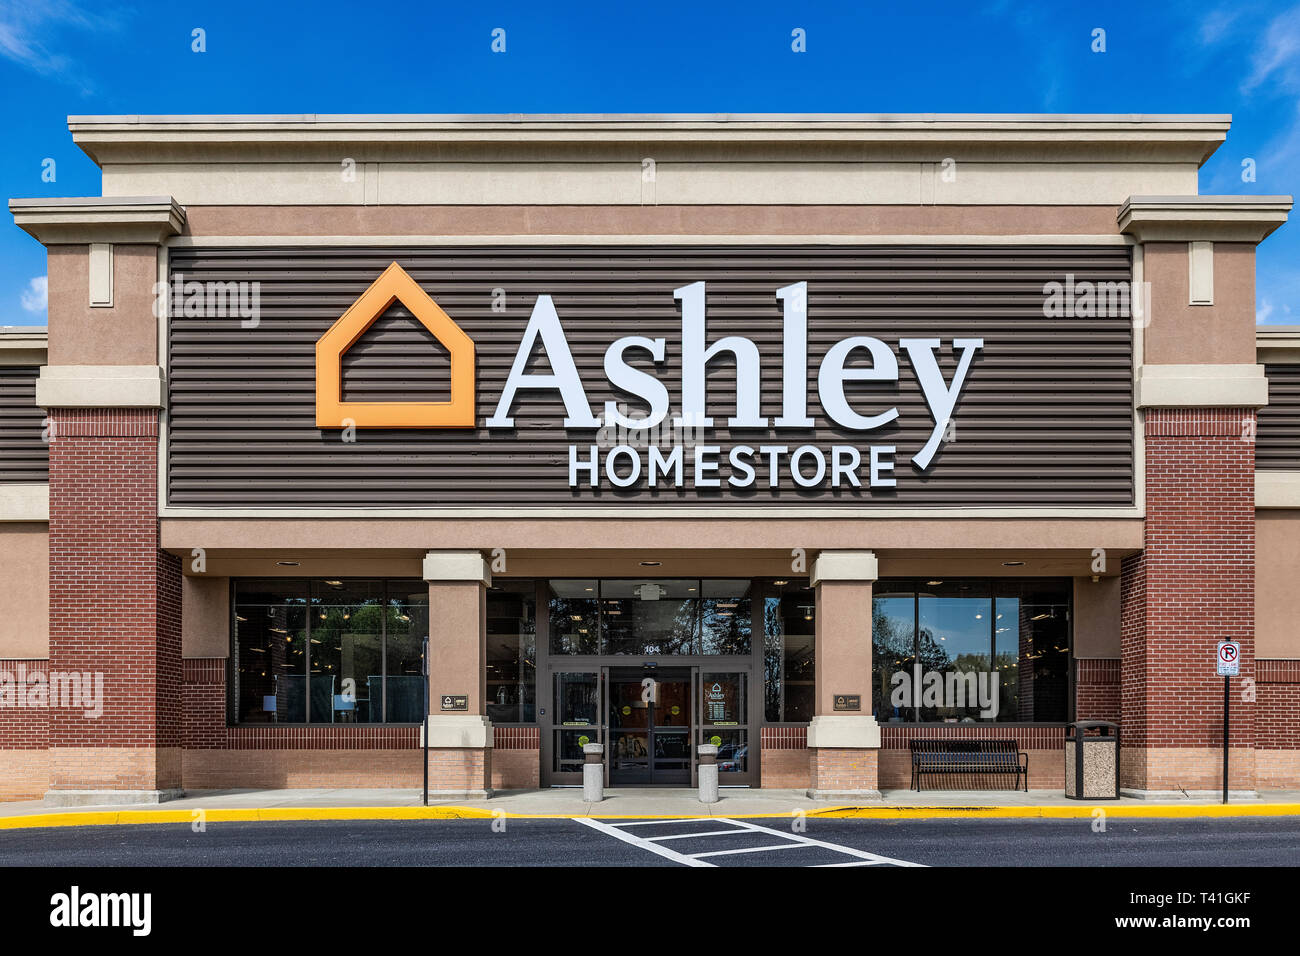 Casa de muebles ashley fotografías e imágenes de alta resolución - Alamy